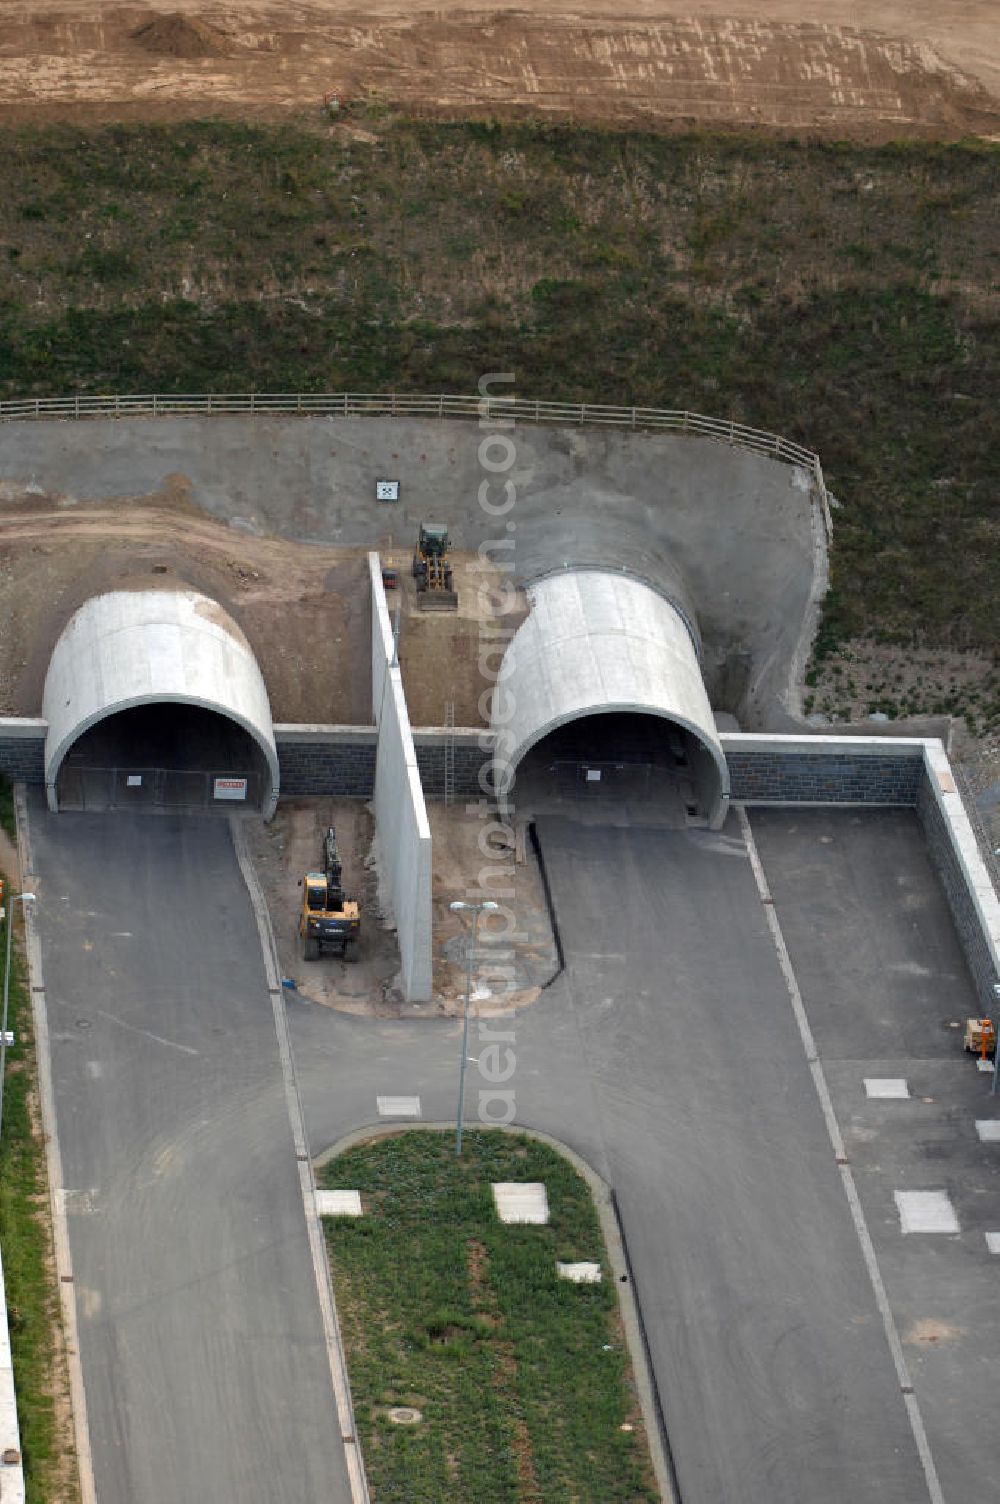 Heldrungen from the bird's eye view: Blick auf den Bau des Schmücketunnels bei Heldrungen in Thüringen. Der Straßentunnel ist ein Teil der Autobahn A71 und unterquert den Höhenzug Schmücke. Der Beginn des Baus war im Jahr 2005. Gebaut wird nach der neuen österreichischen Tunnelbauweise (NÖT), bei der zwei parallele Tunnelröhren entstehen sollen, die jeweils zwei Fahrspuren enthalten. Die maximale Länge des Tunnels beträgt 1729 Meter. Die Baudurchführung übernahm die DEGES. Kontakt DEGES: DEGES, Deutsche Einheit Fernstraßenplanungs- und -bau GmbH, Zimmerstraße 54, 10117 Berlin, Tel. +49(0)30 20243 0, Fax +49(0)30 20243 291, Email: info@deges.de; Kontakt Bauüberwachung: BOL / BÜ Schmücketunnel, Hauptstraße 29, 06577 Oberheldrungen, Tel. +49(0)34673 7823 00, Fax +49(0)34673 7823 99, Email: schmuecketunnel@schuessler-plan.de